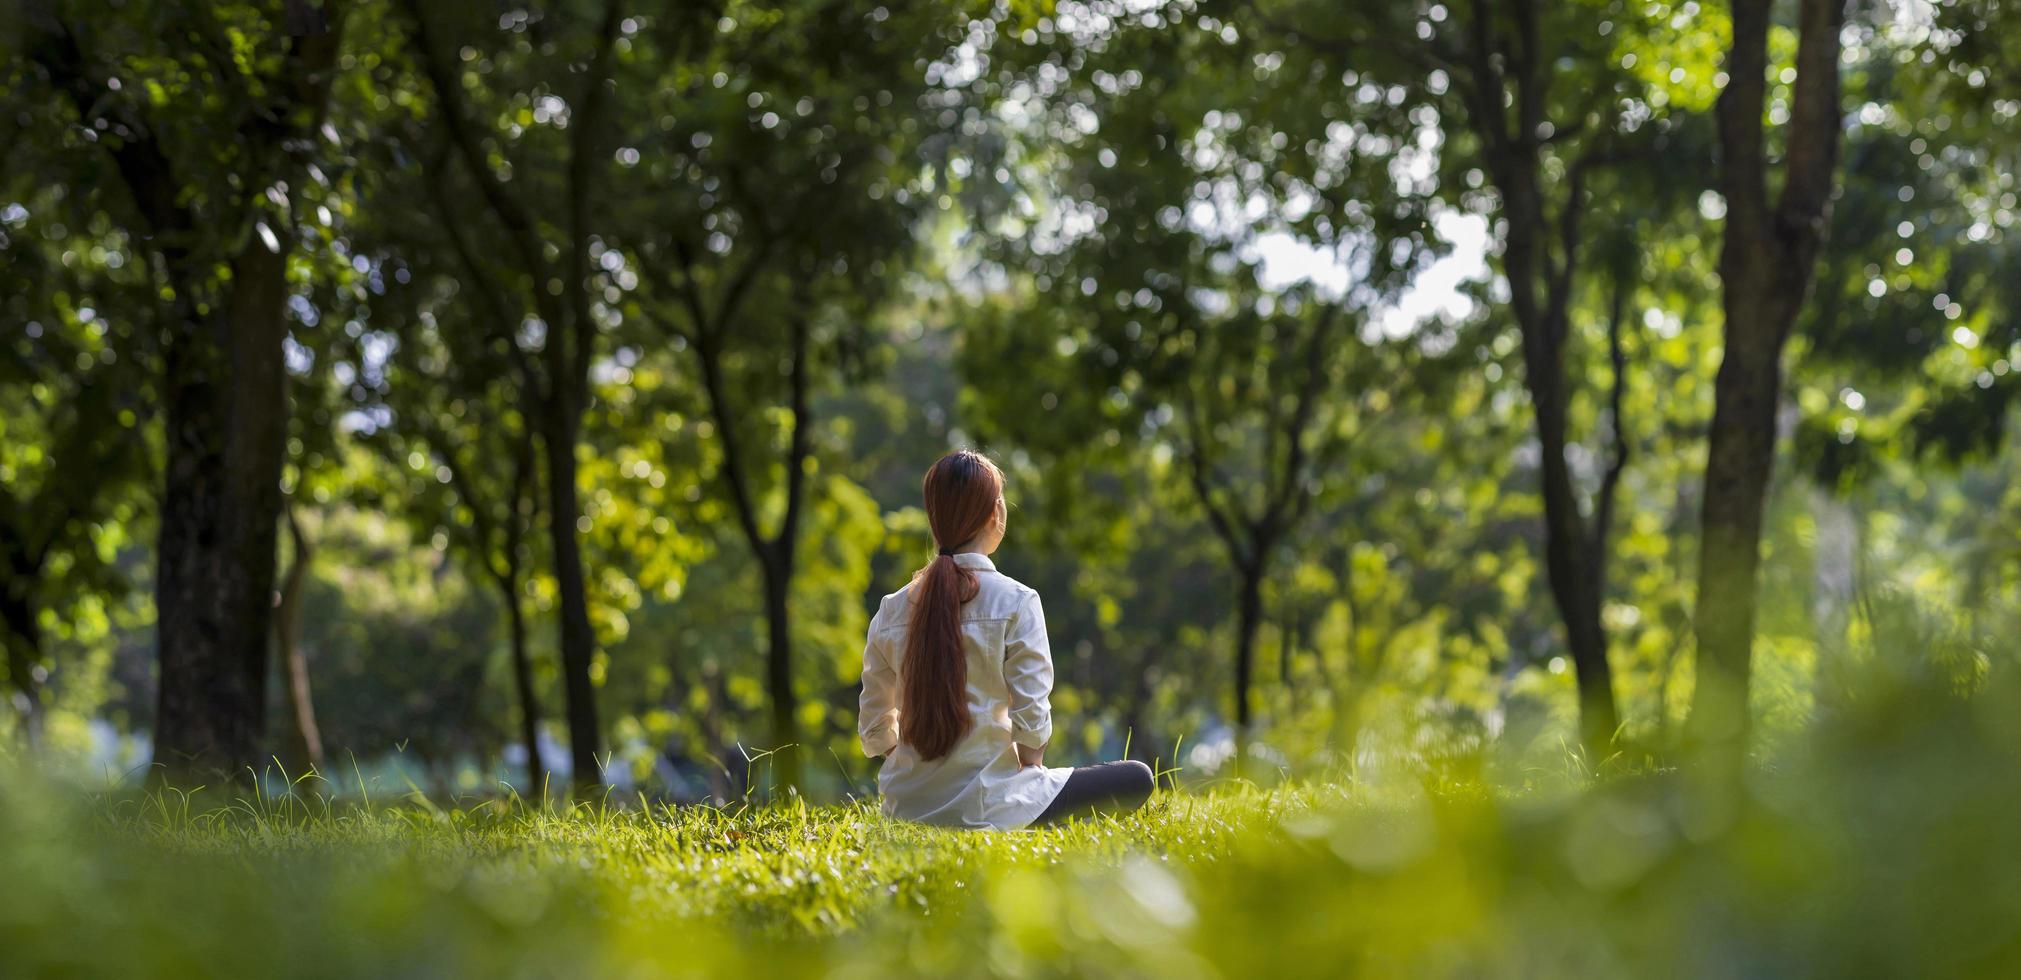 vrouw die ontspannen meditatie beoefent in het bos om geluk te bereiken vanuit innerlijke vrede wijsheid met een straal zonlicht voor een gezonde geest en ziel concept foto